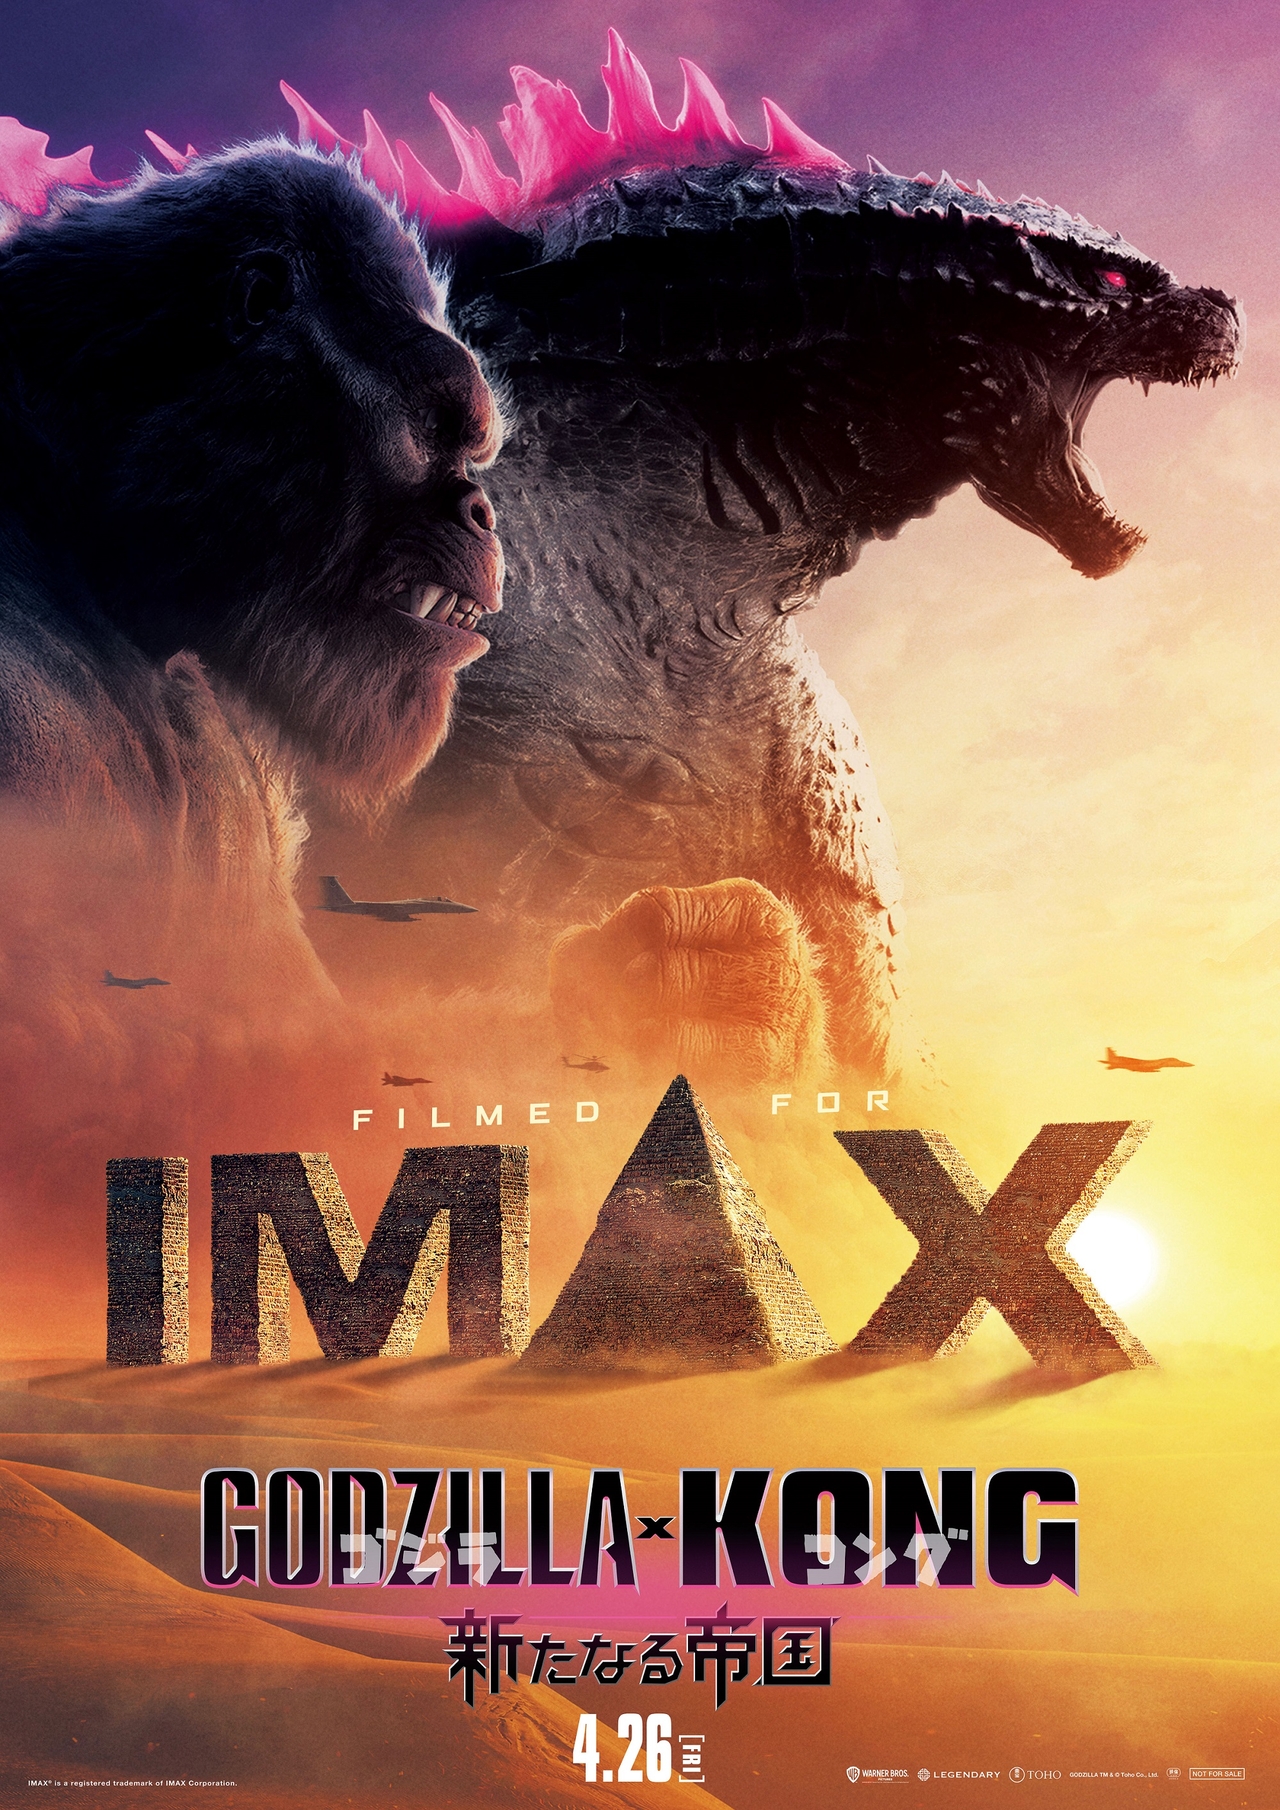 ゴジラ×コング 新たなる帝国」日本版IMAXエクスクルーシブビジュアル ...